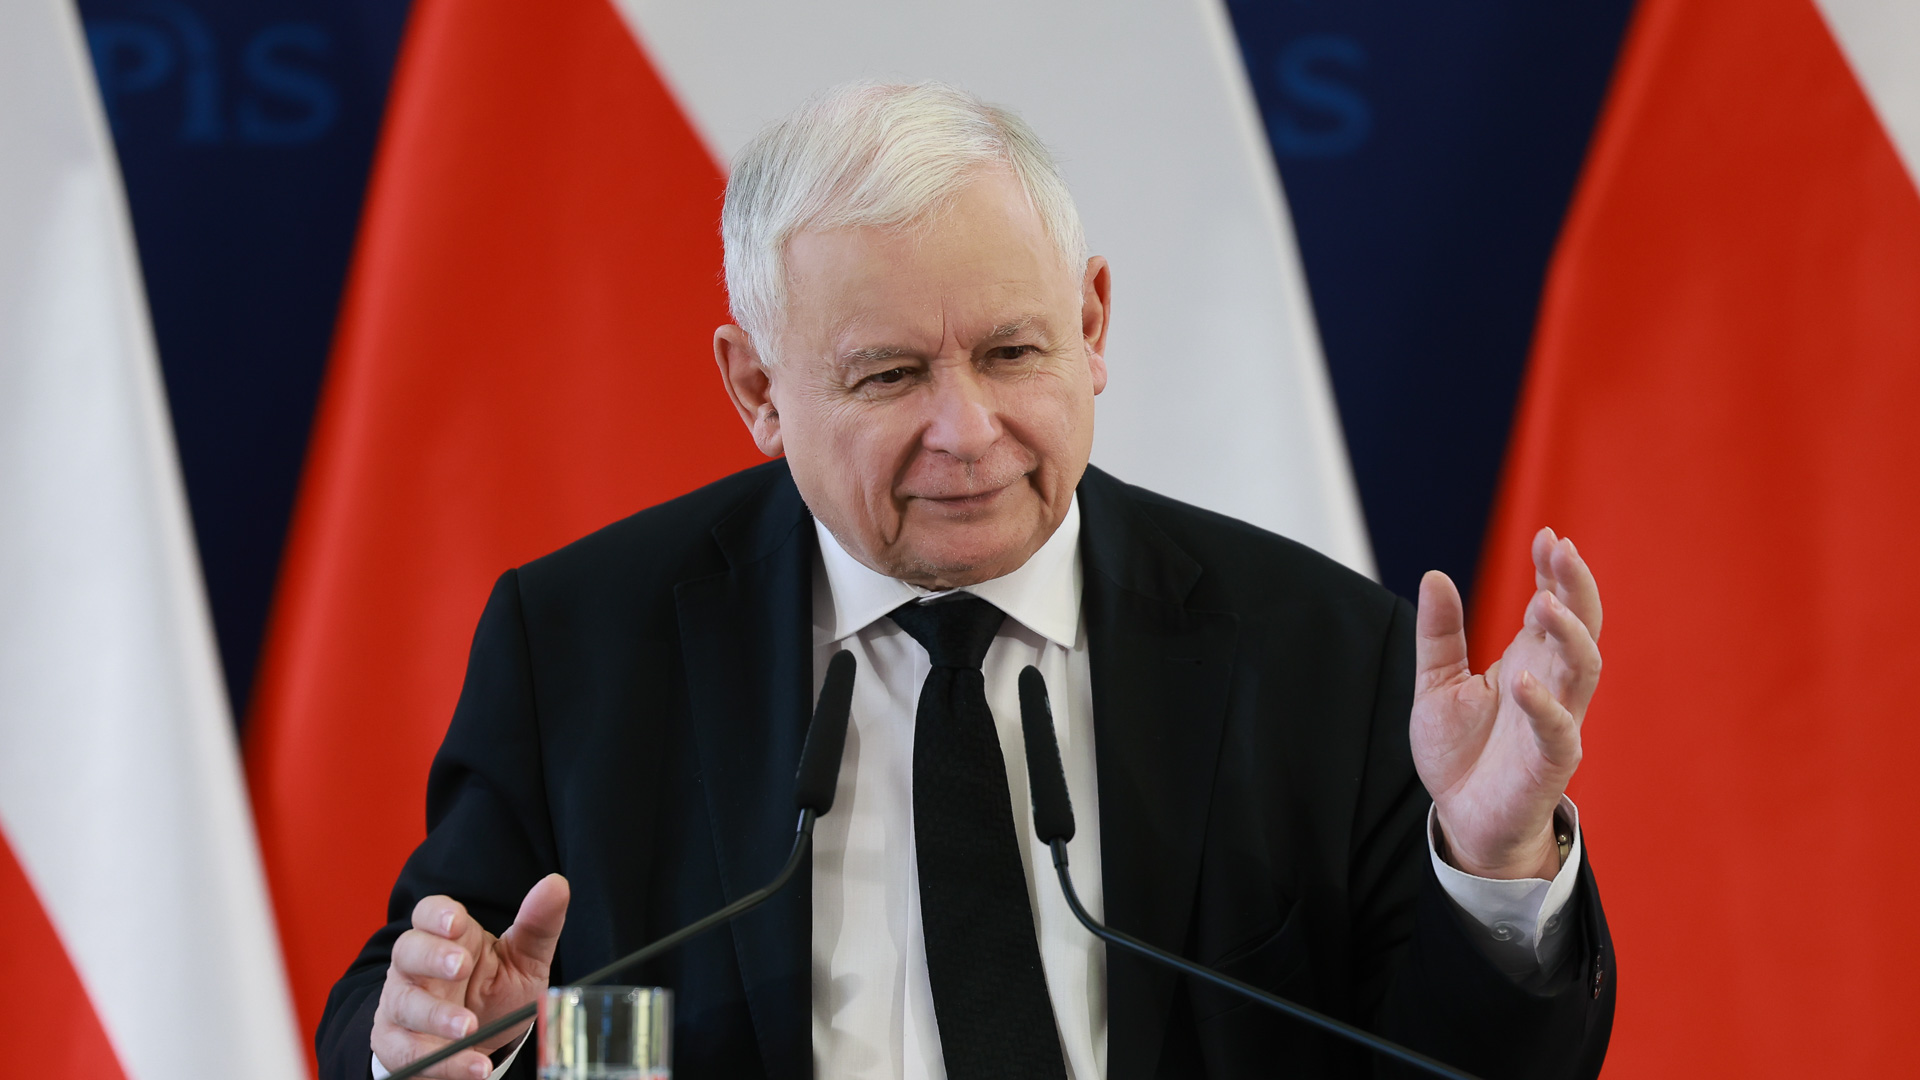 Prezes Prawa i Sprawiedliwości Jarosław Kaczyński powiedział, że o złożonym przez prezydenta projekcie nowelizacji ustawy o komisji do spraw wpływów rosyjskich, będzie decydował w głosowaniu klub Prawa i Sprawiedliwości.